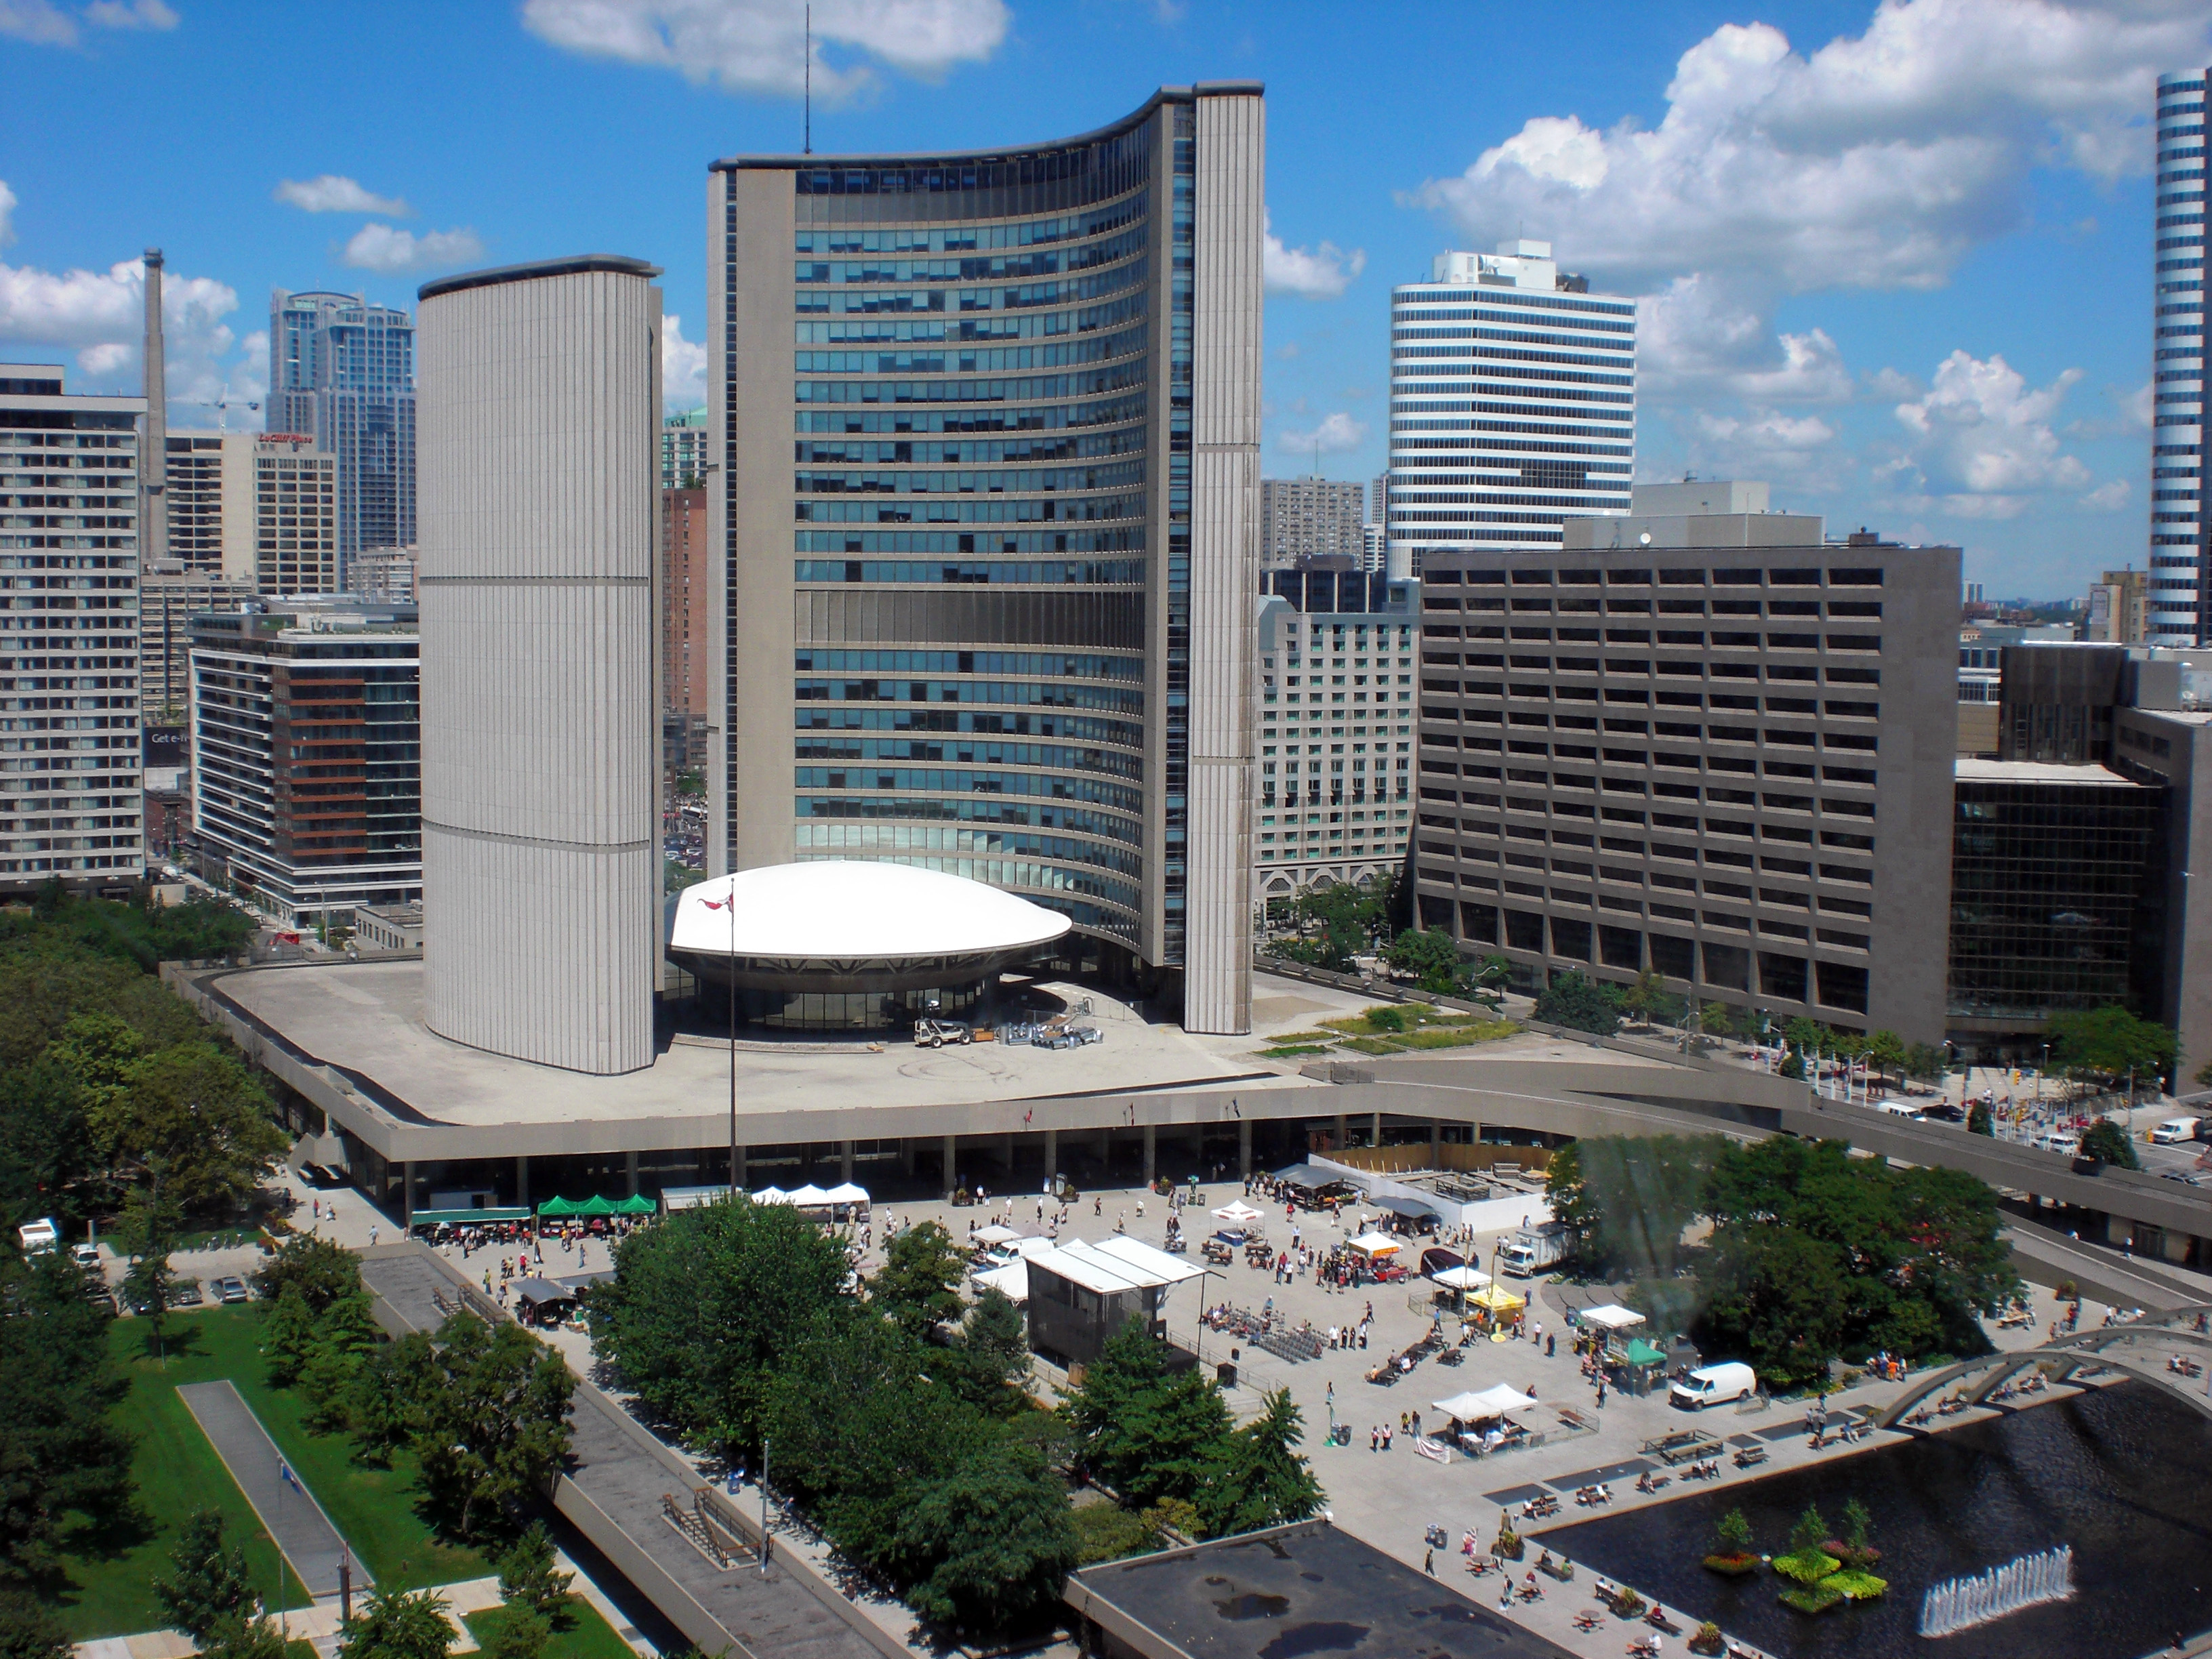 File:City Hall, Toronto, Ontario.jpg - Wikimedia Commons